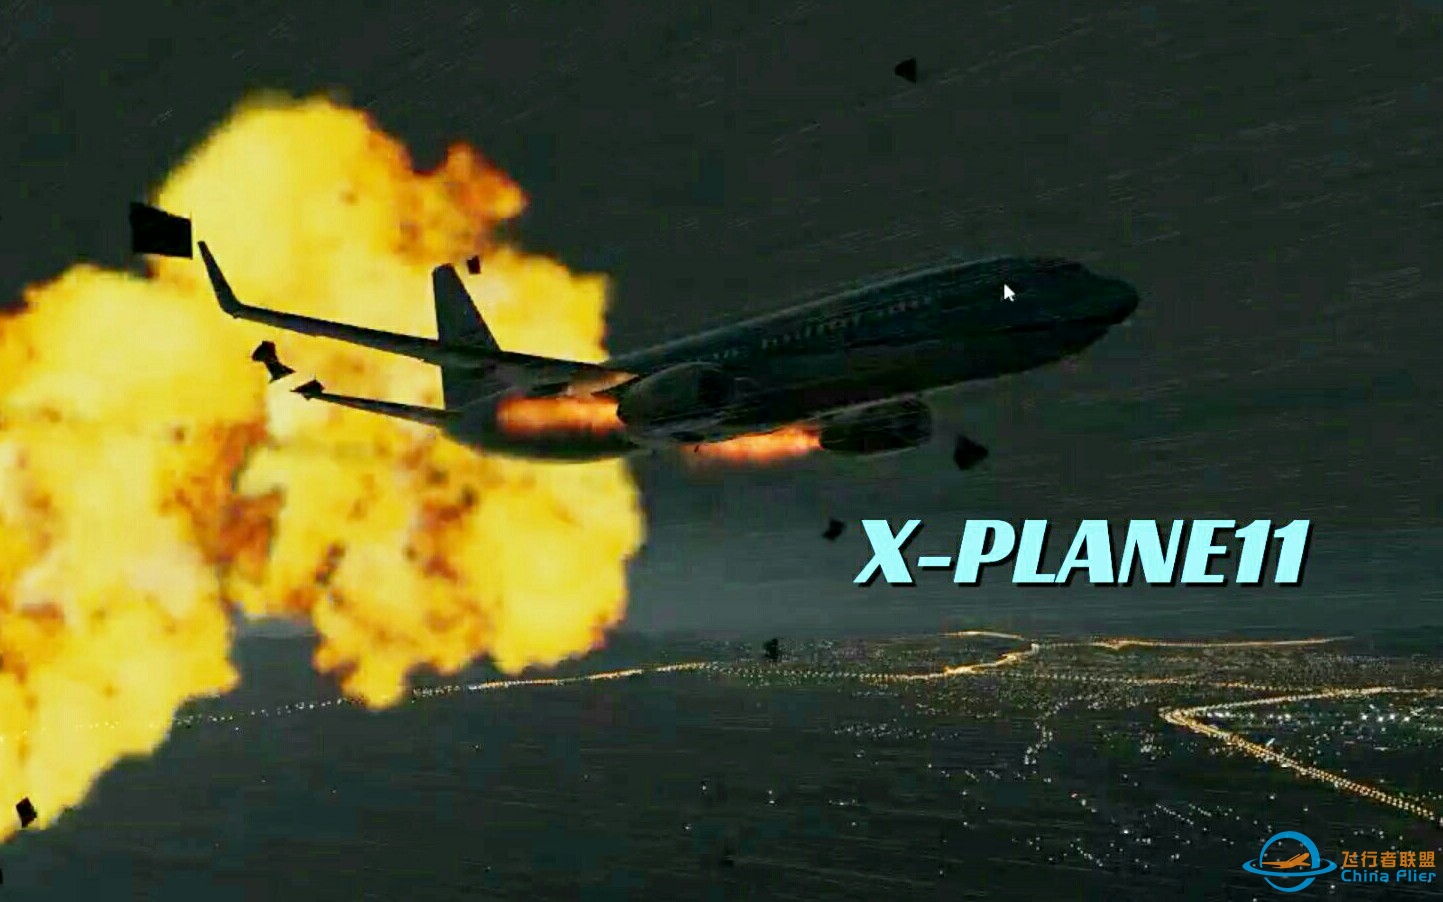 竟被AI机击落了?X-PLANE11入正首飞!-7383 